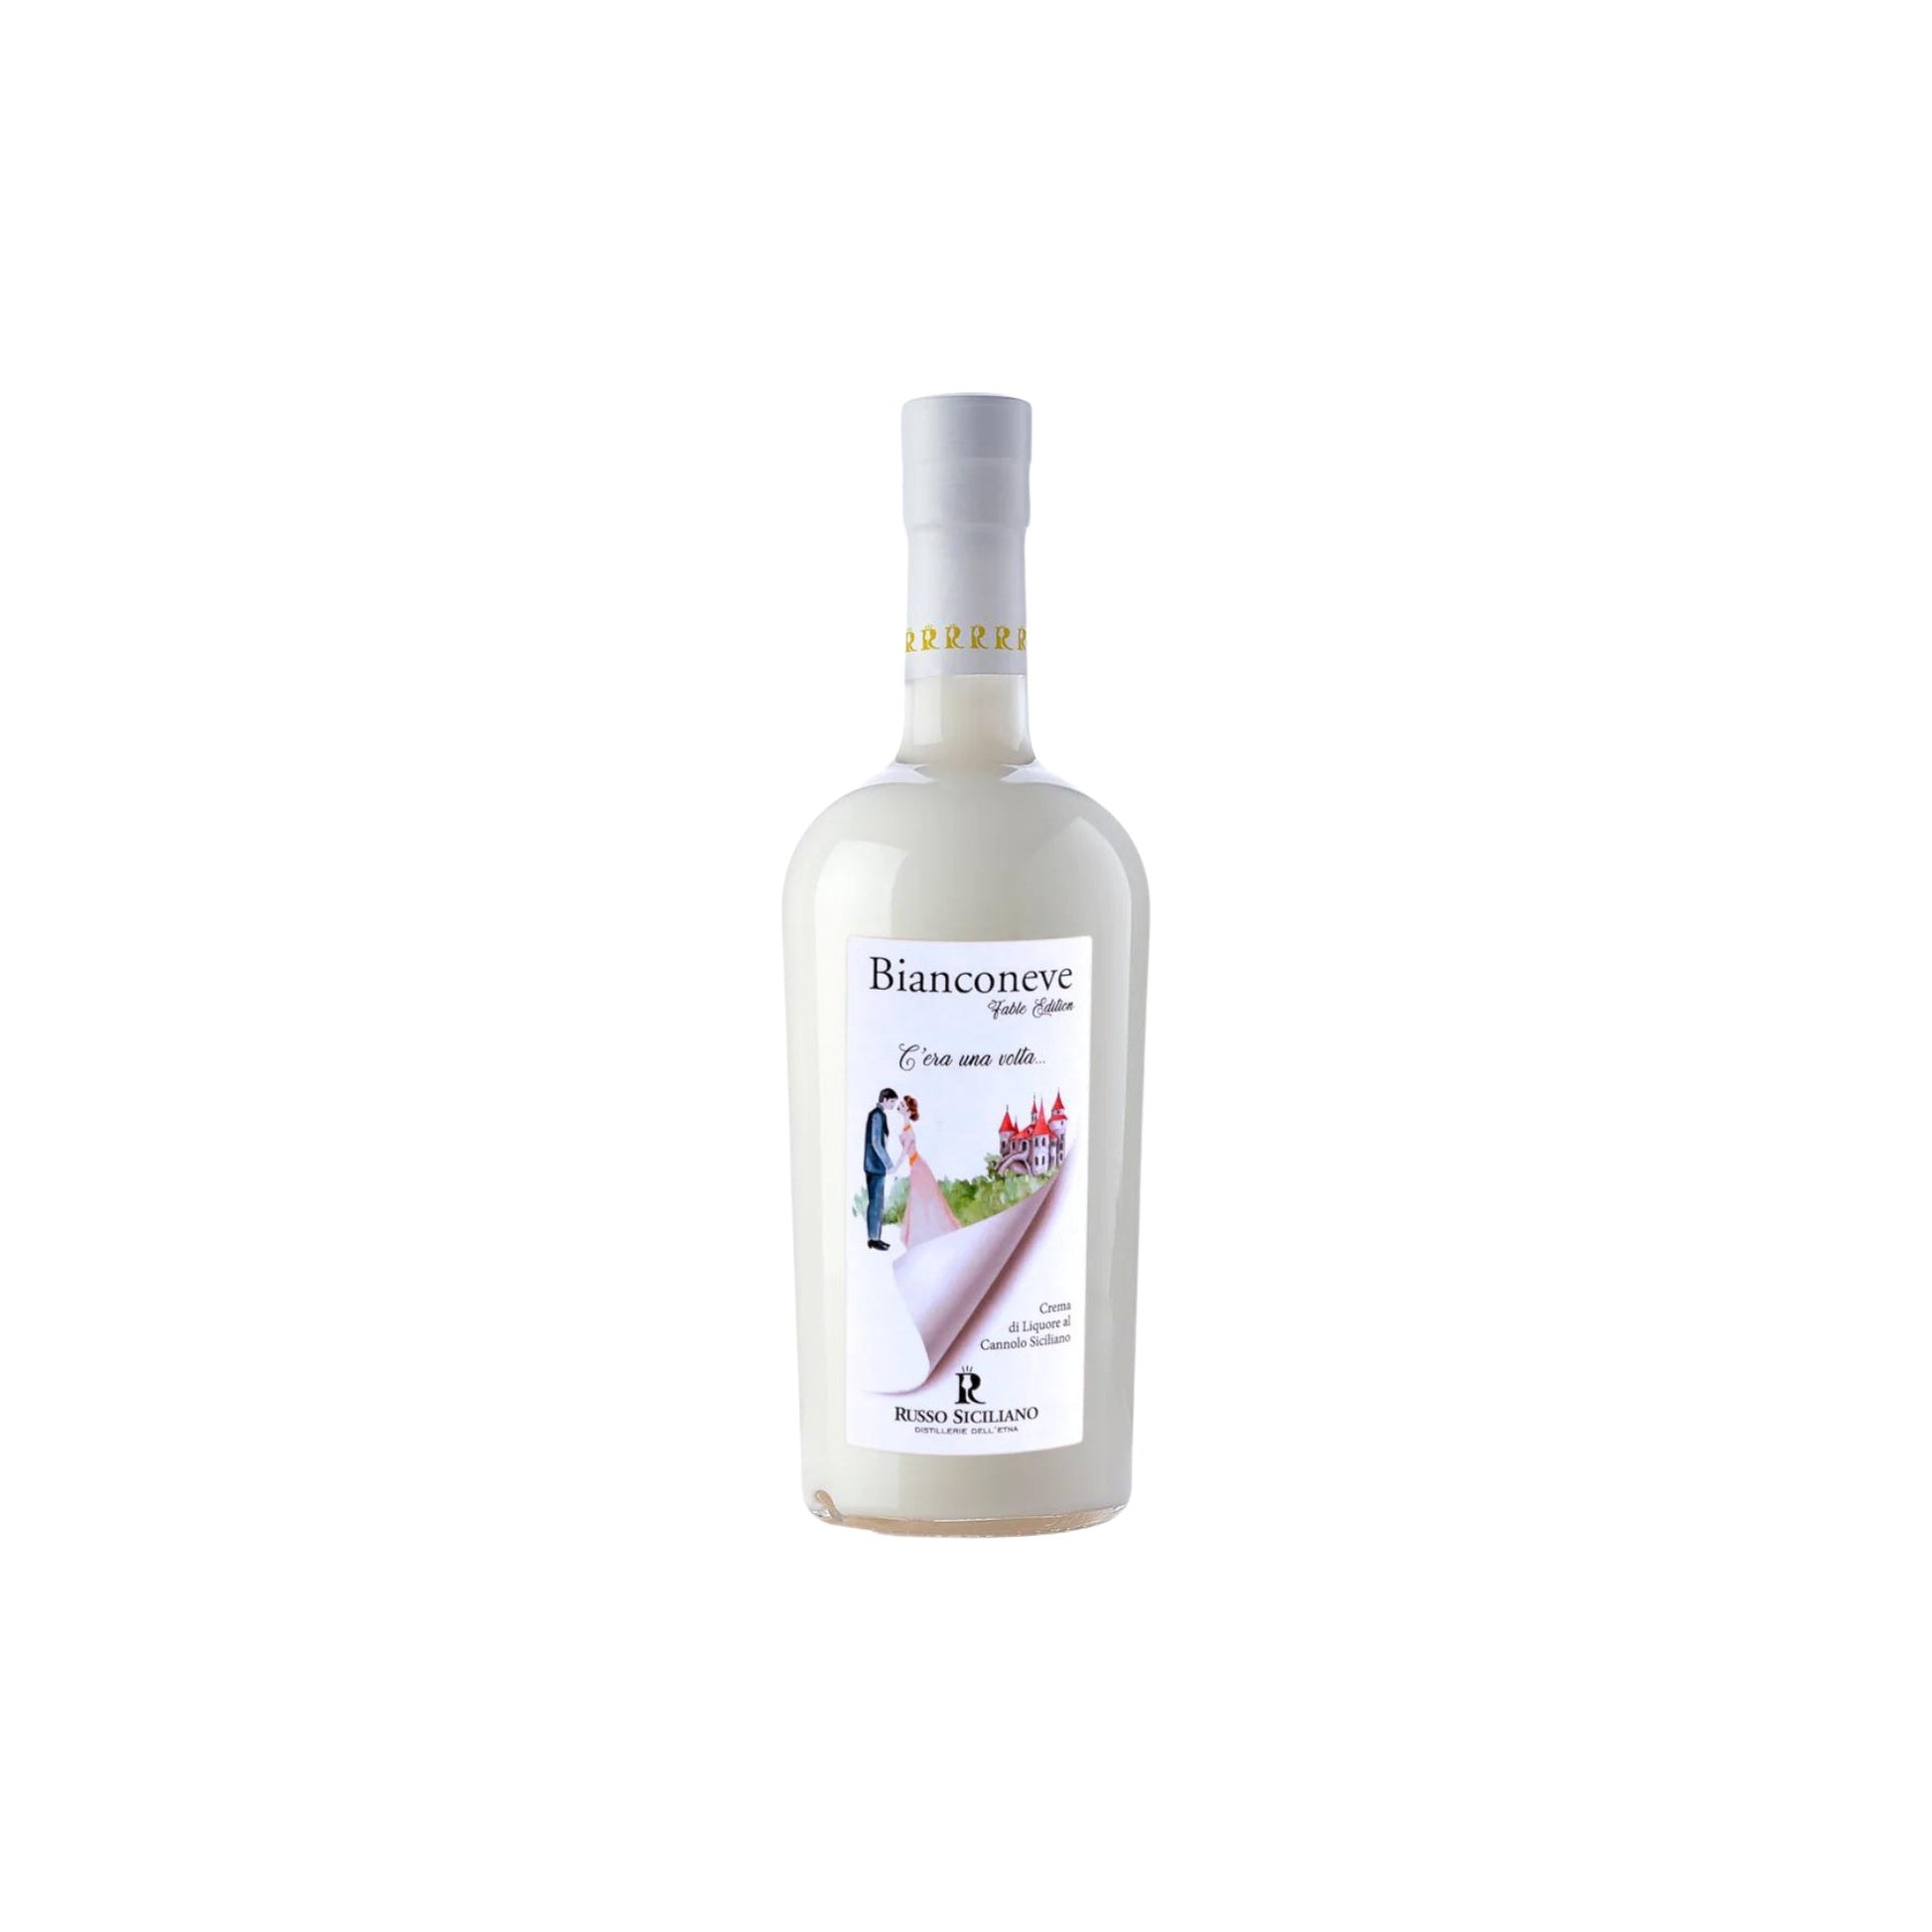 Bianconeve – Crema di Liquore al Cannolo Siciliano - Distillerie dell’Etna dei F.lli Russo srl - Maravigghia for Sicily